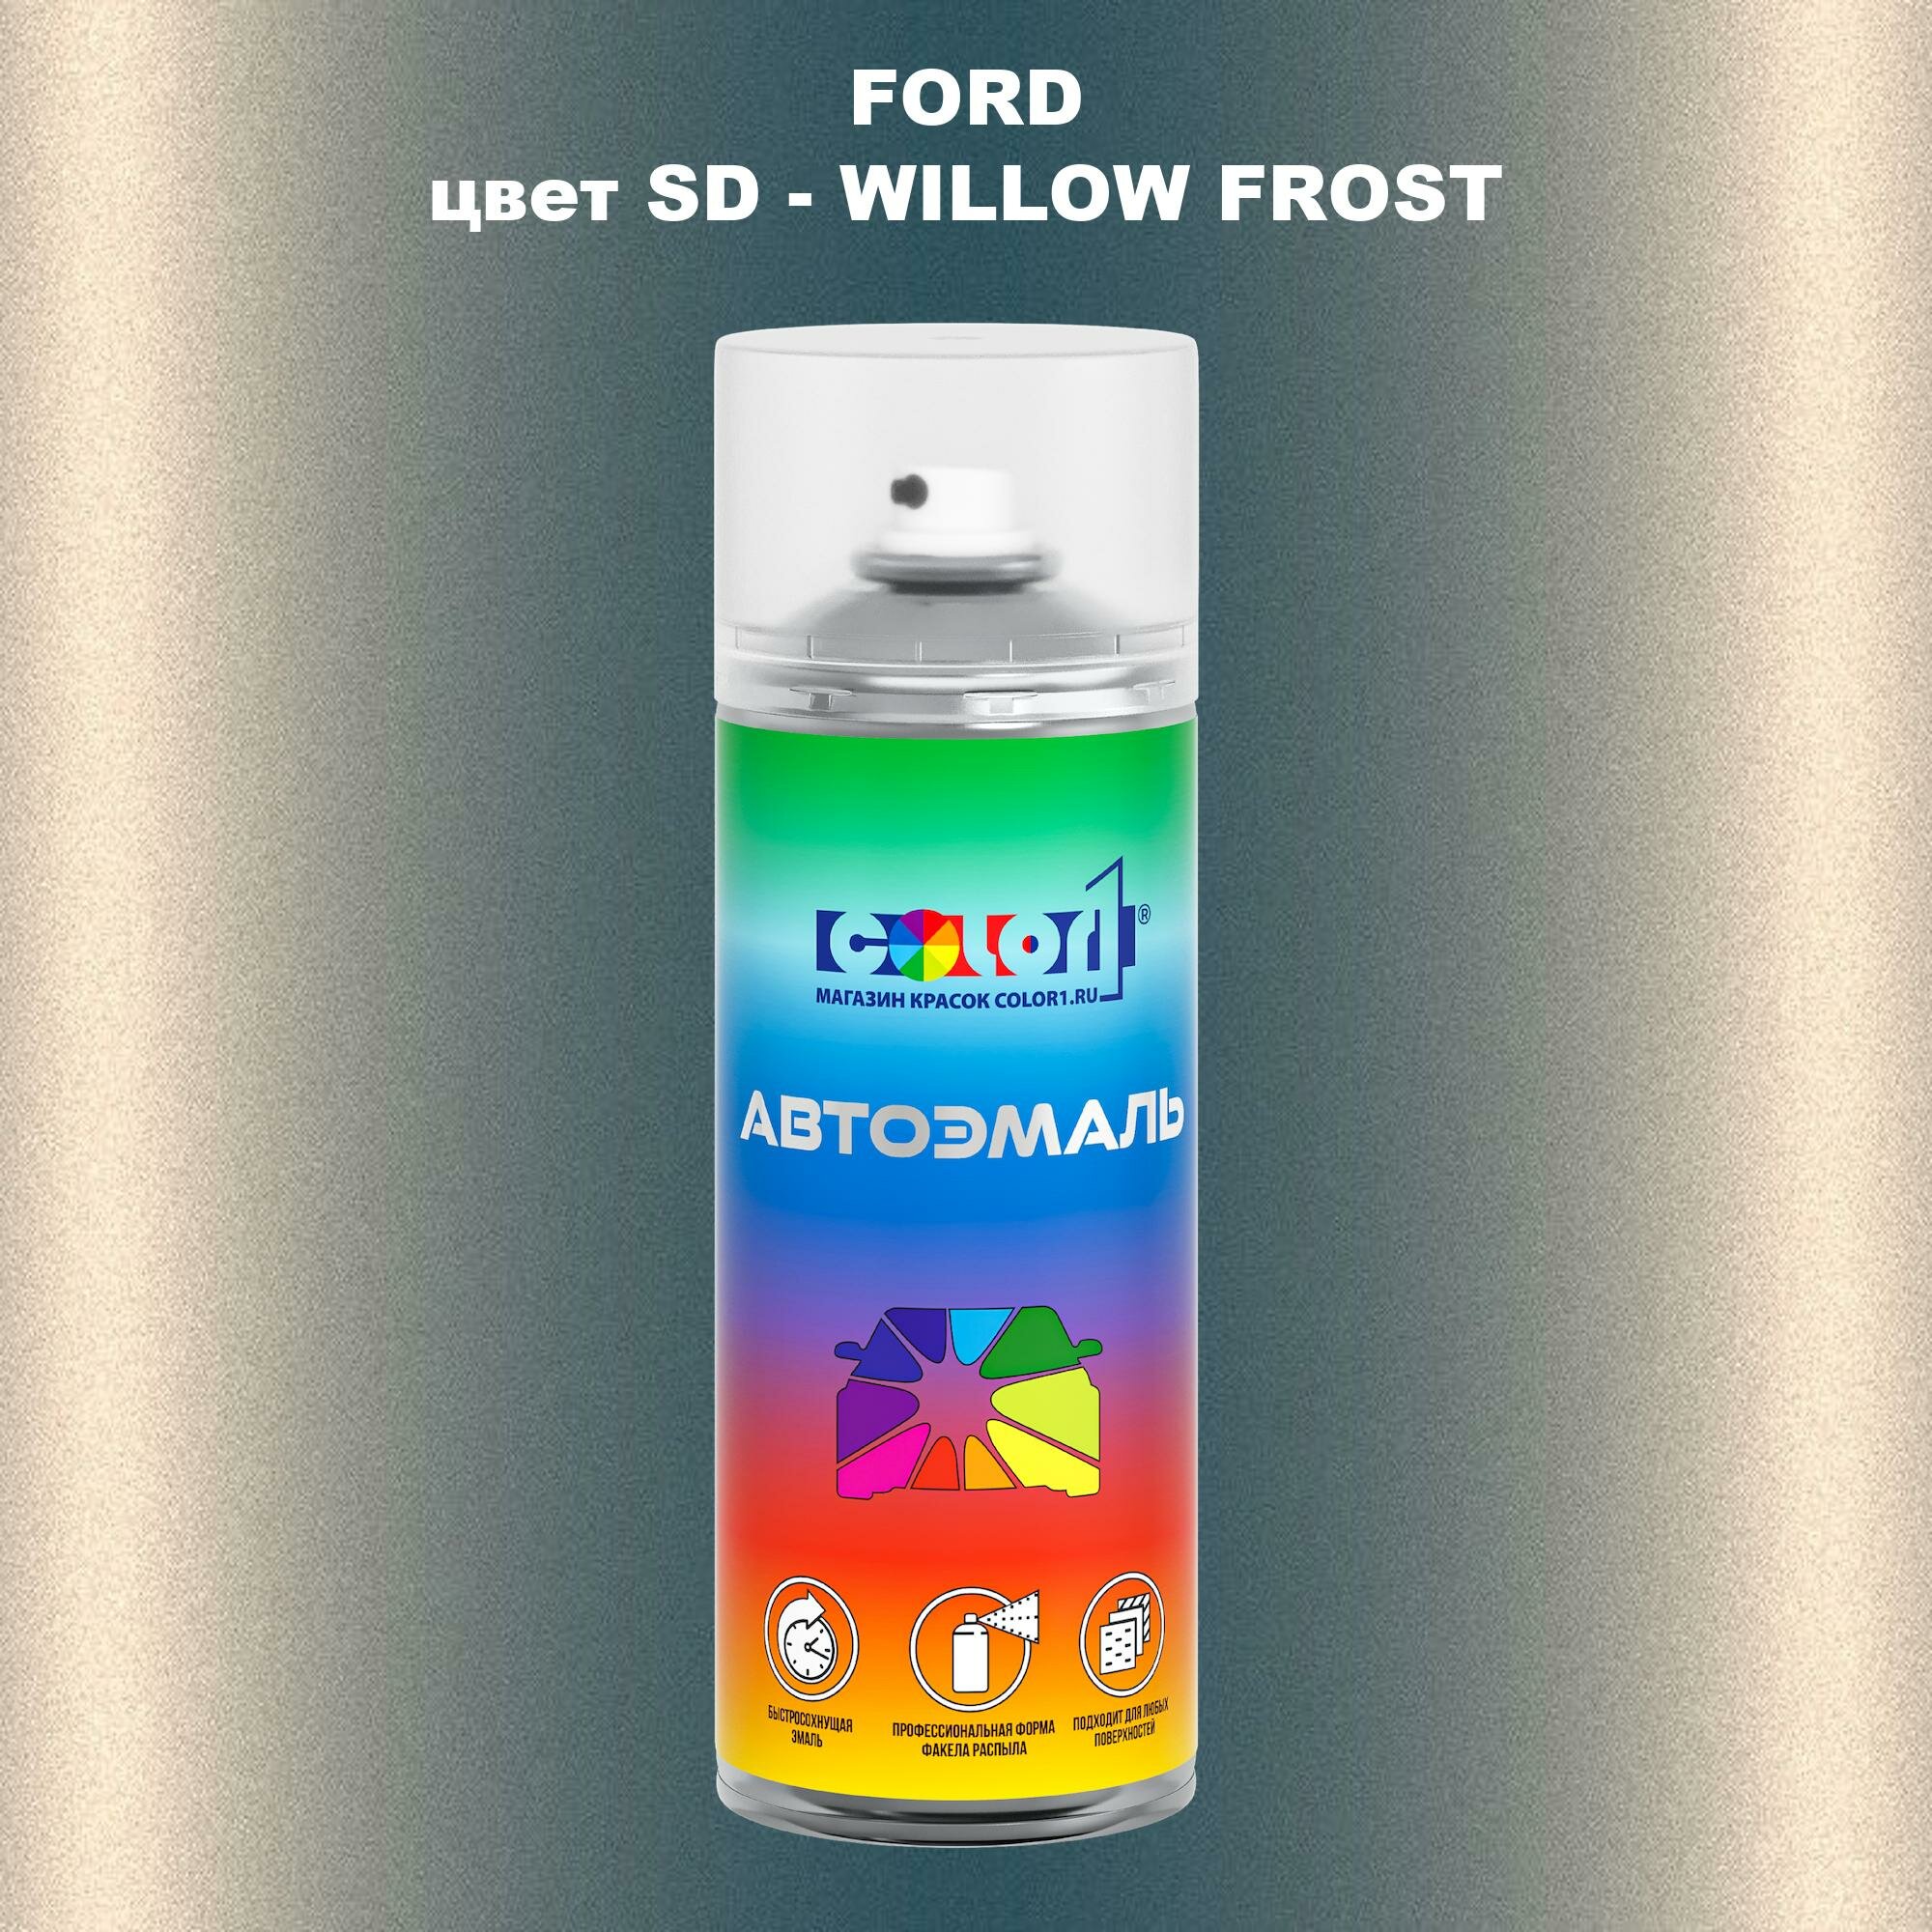 Аэрозольная краска COLOR1 для FORD, цвет SD - WILLOW FROST